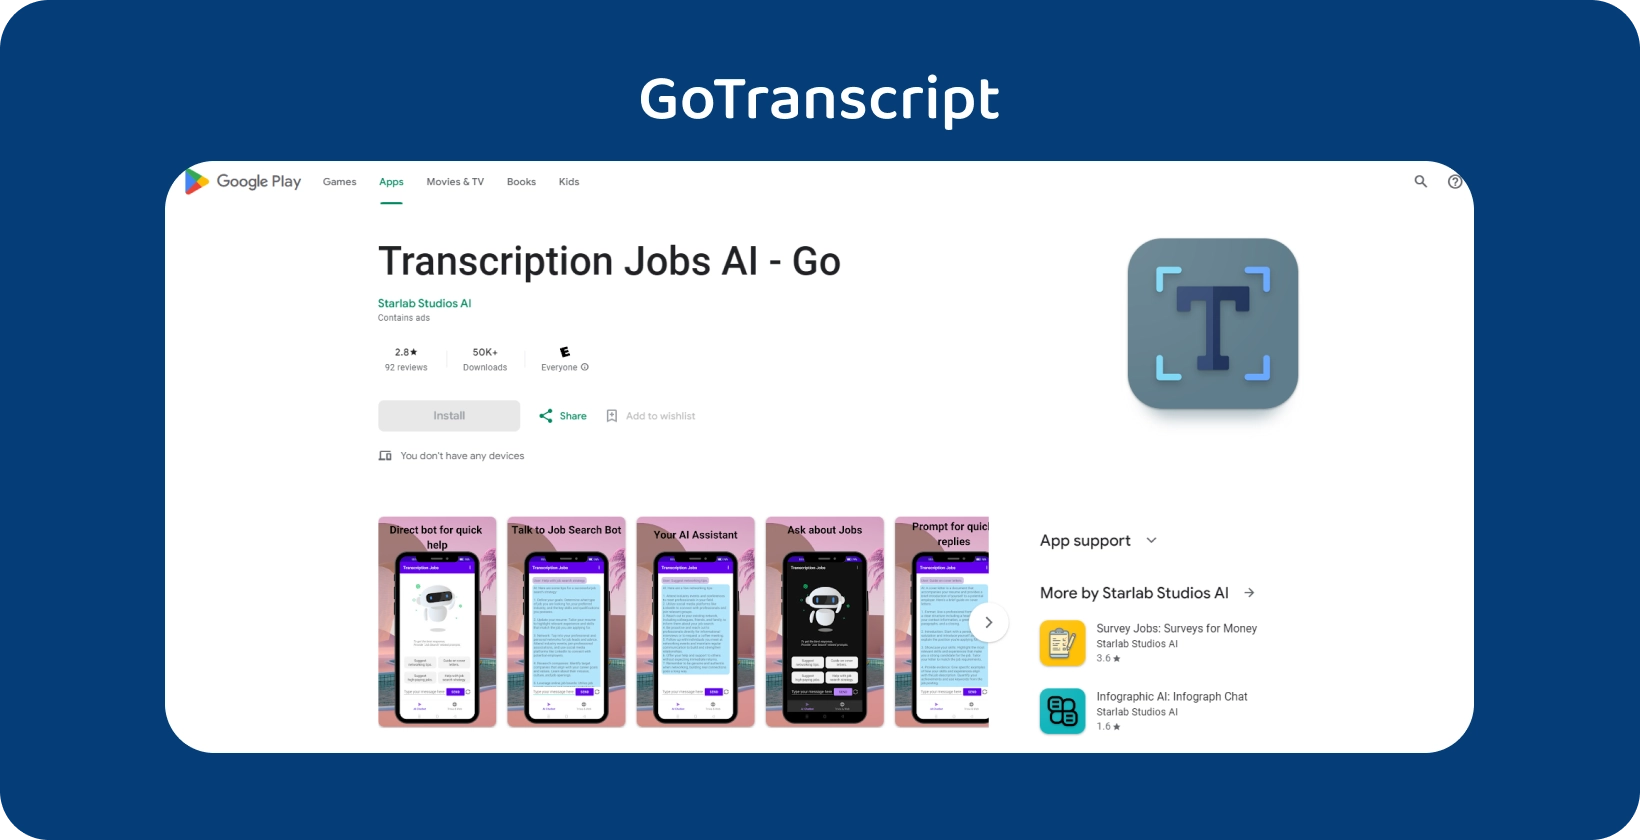 Google Play'daki GoTranscript uygulaması, sezgisel bir mobil arayüzle transkripsiyon işlerini yönetmek için tasarlanmıştır.